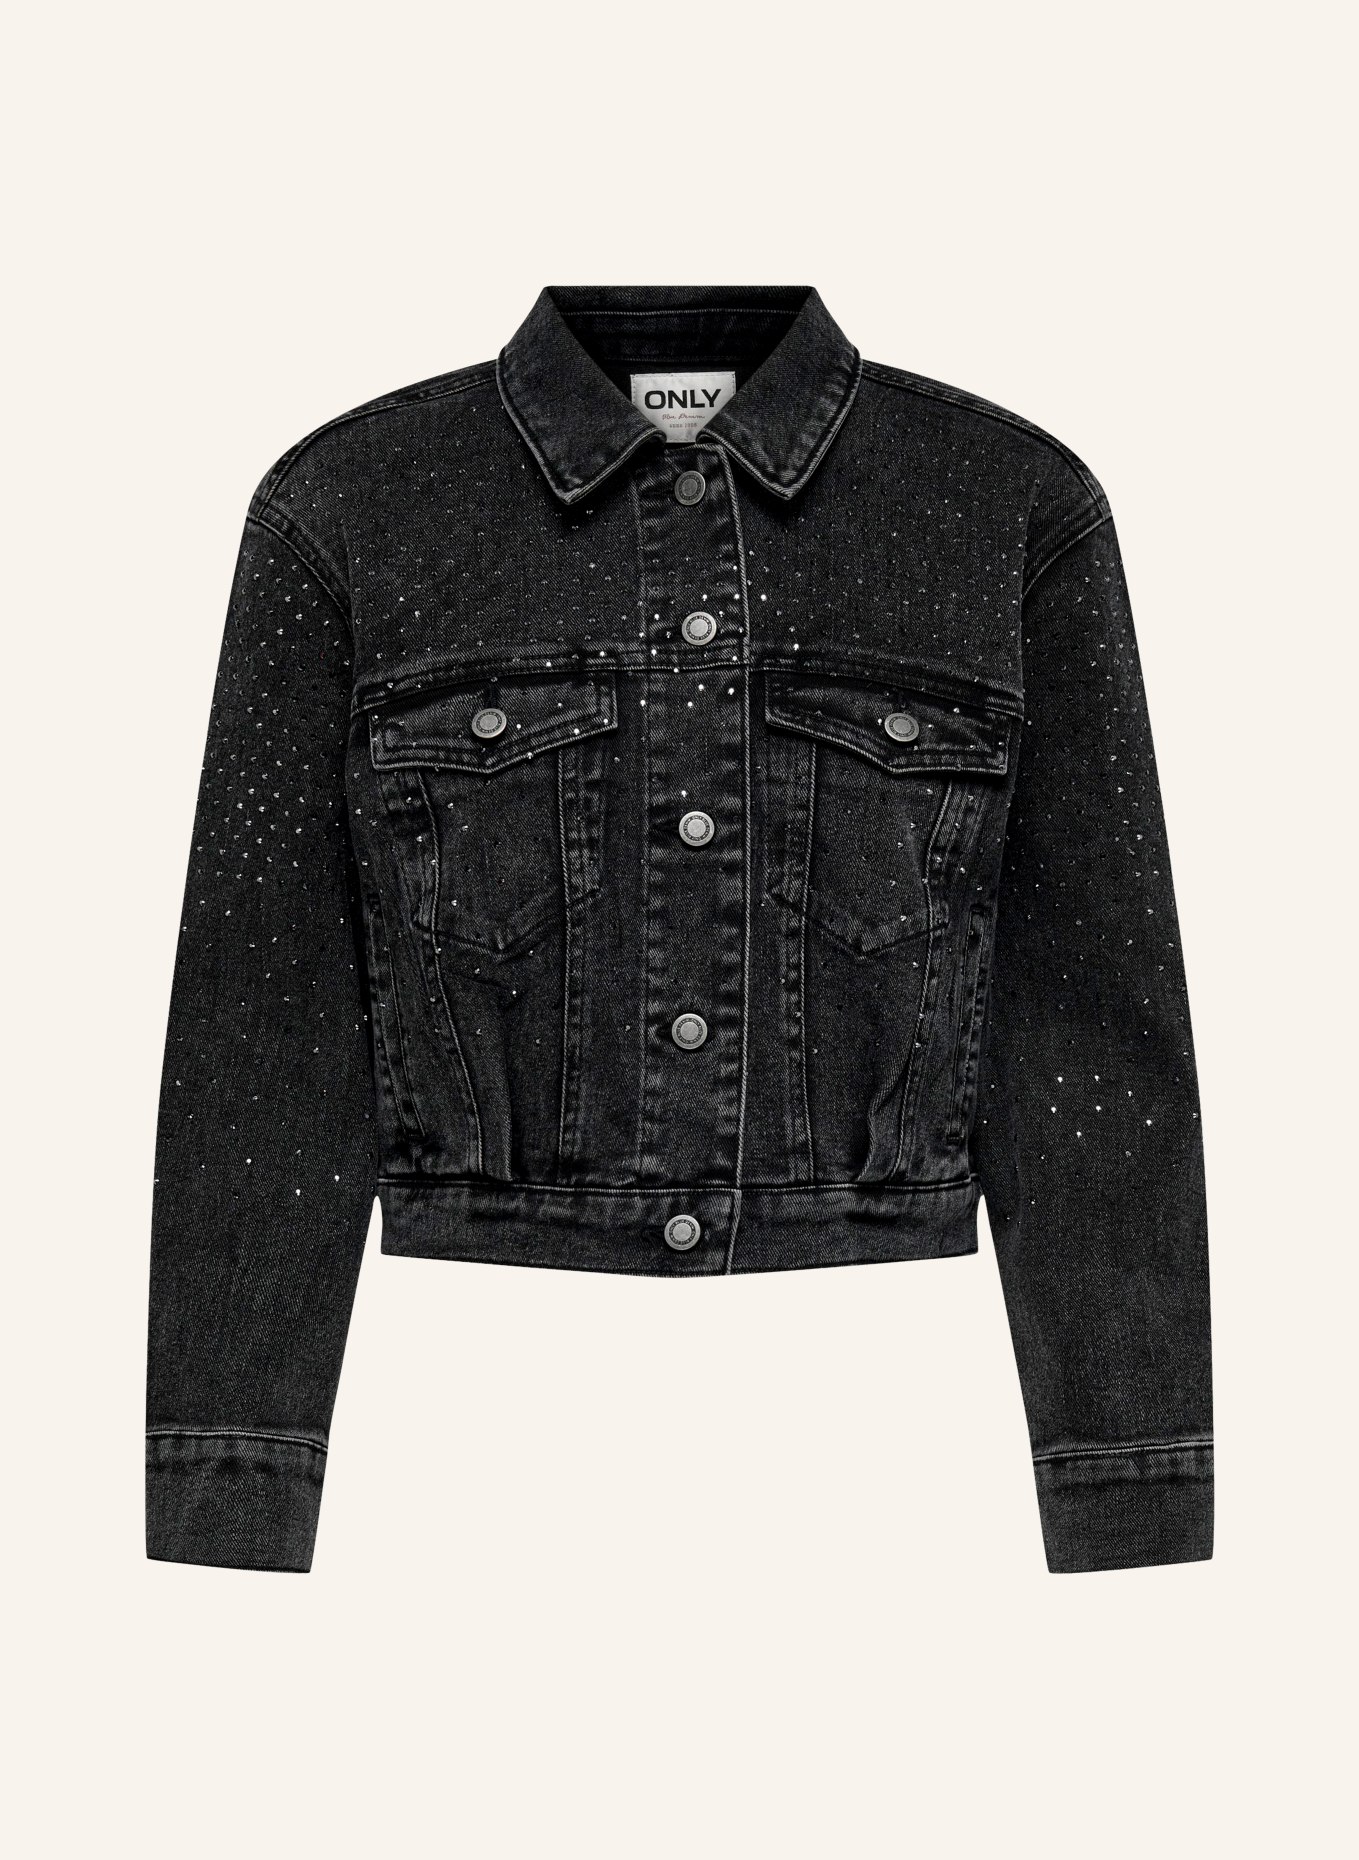 ONLY Denim jacket with decorative gems, Color: BLACK (Image 1)